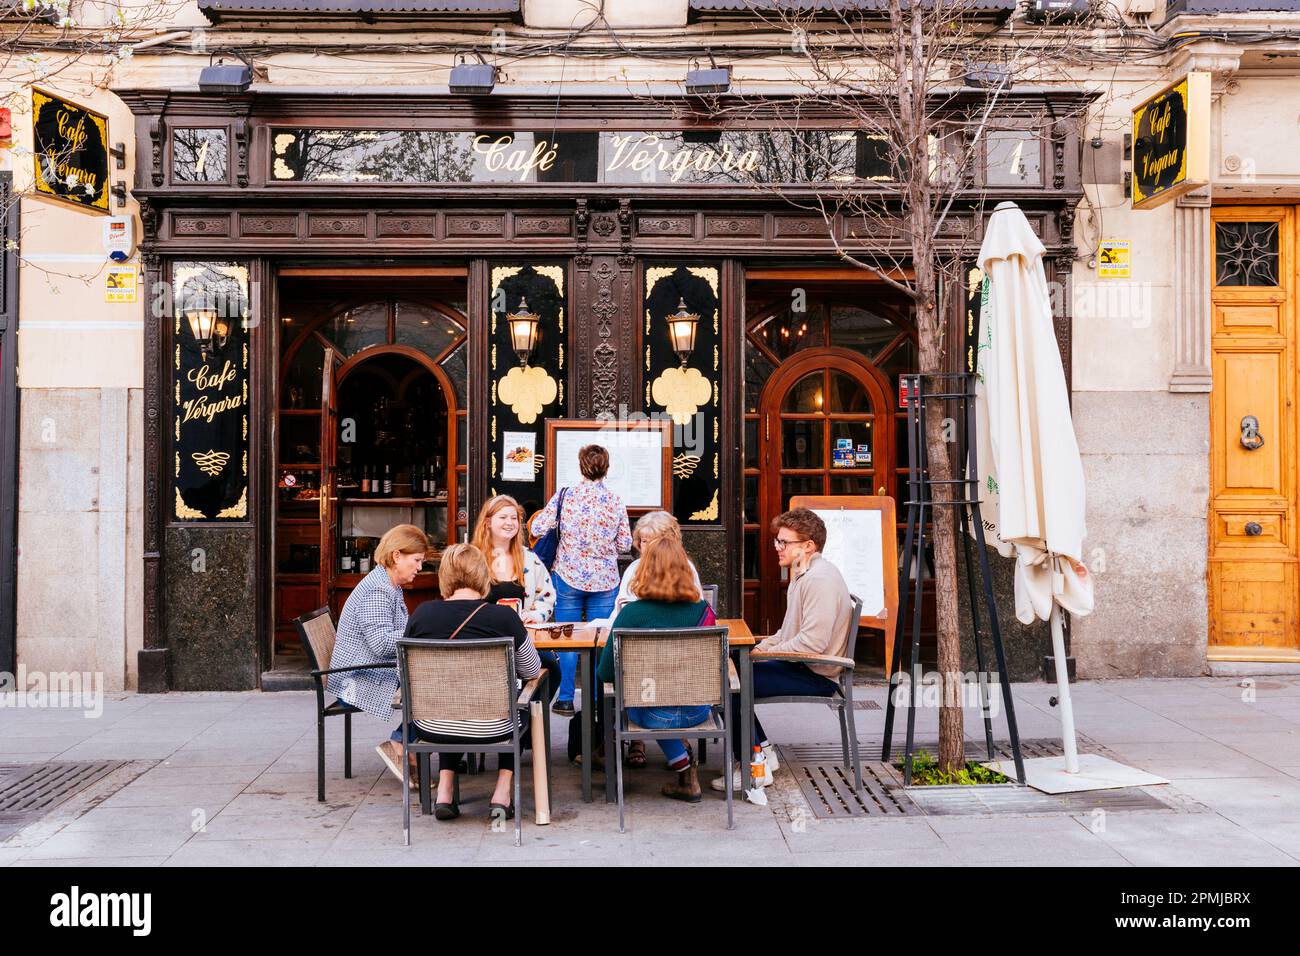 Traditionelle Taverne. Die Gäste teilen sich einen Tisch auf der Terrasse des Café Vergara, Calle de Vergara. Madrid hat eine wichtige gastronomische Tradition. Viele Aufl. Stockfoto